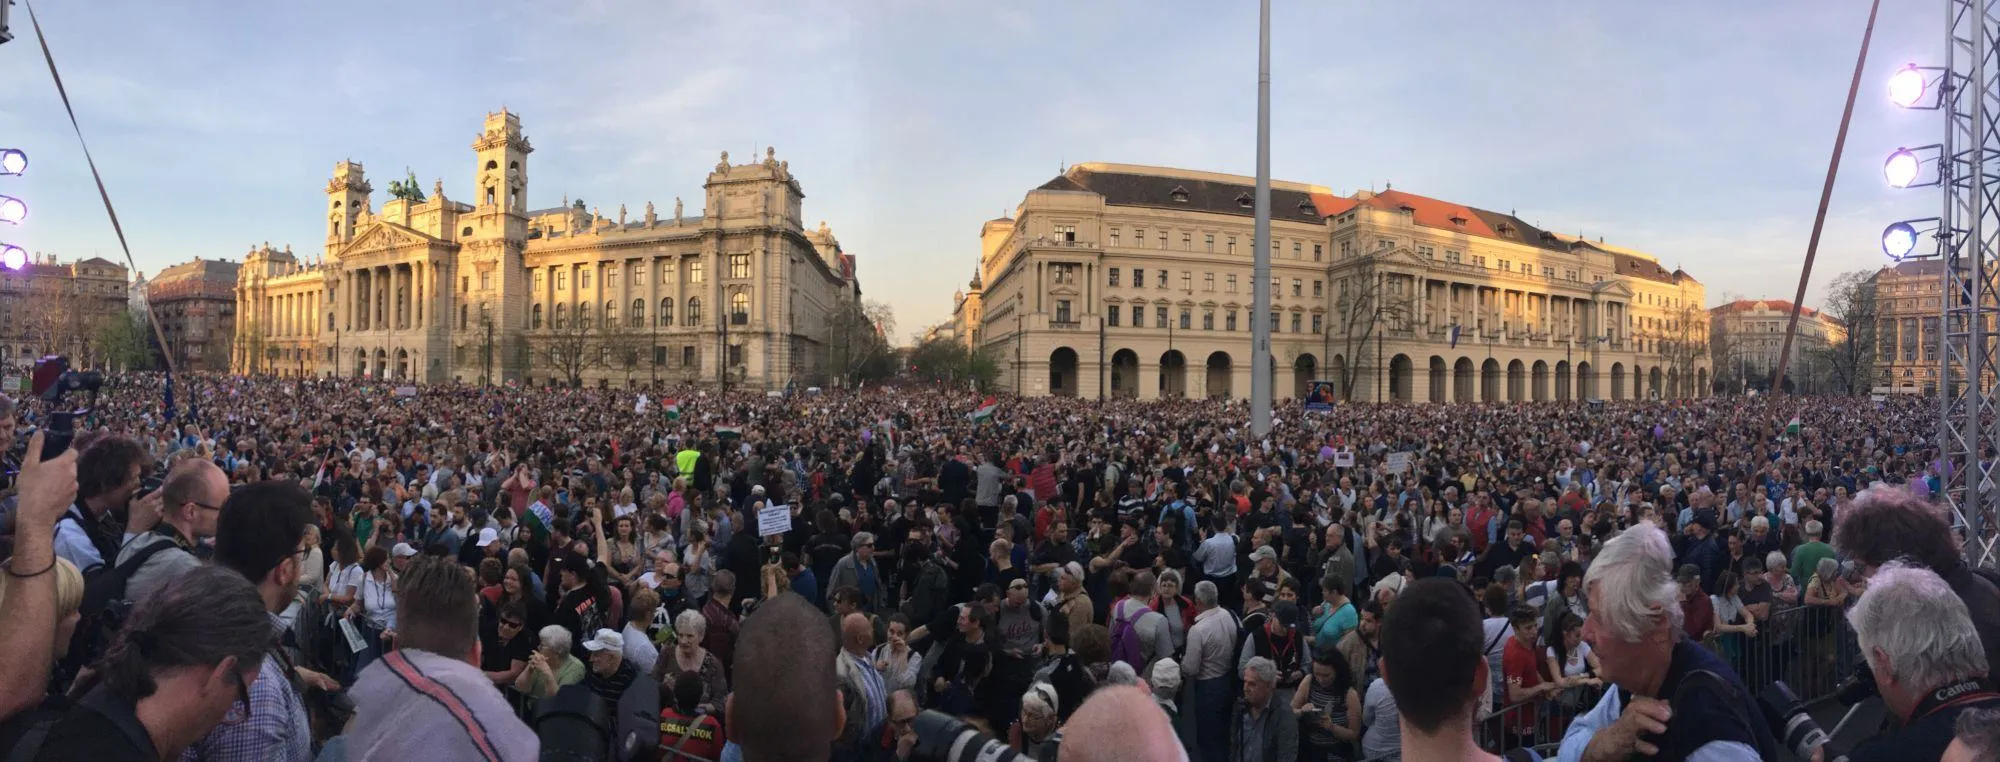 Протести в Будапешті